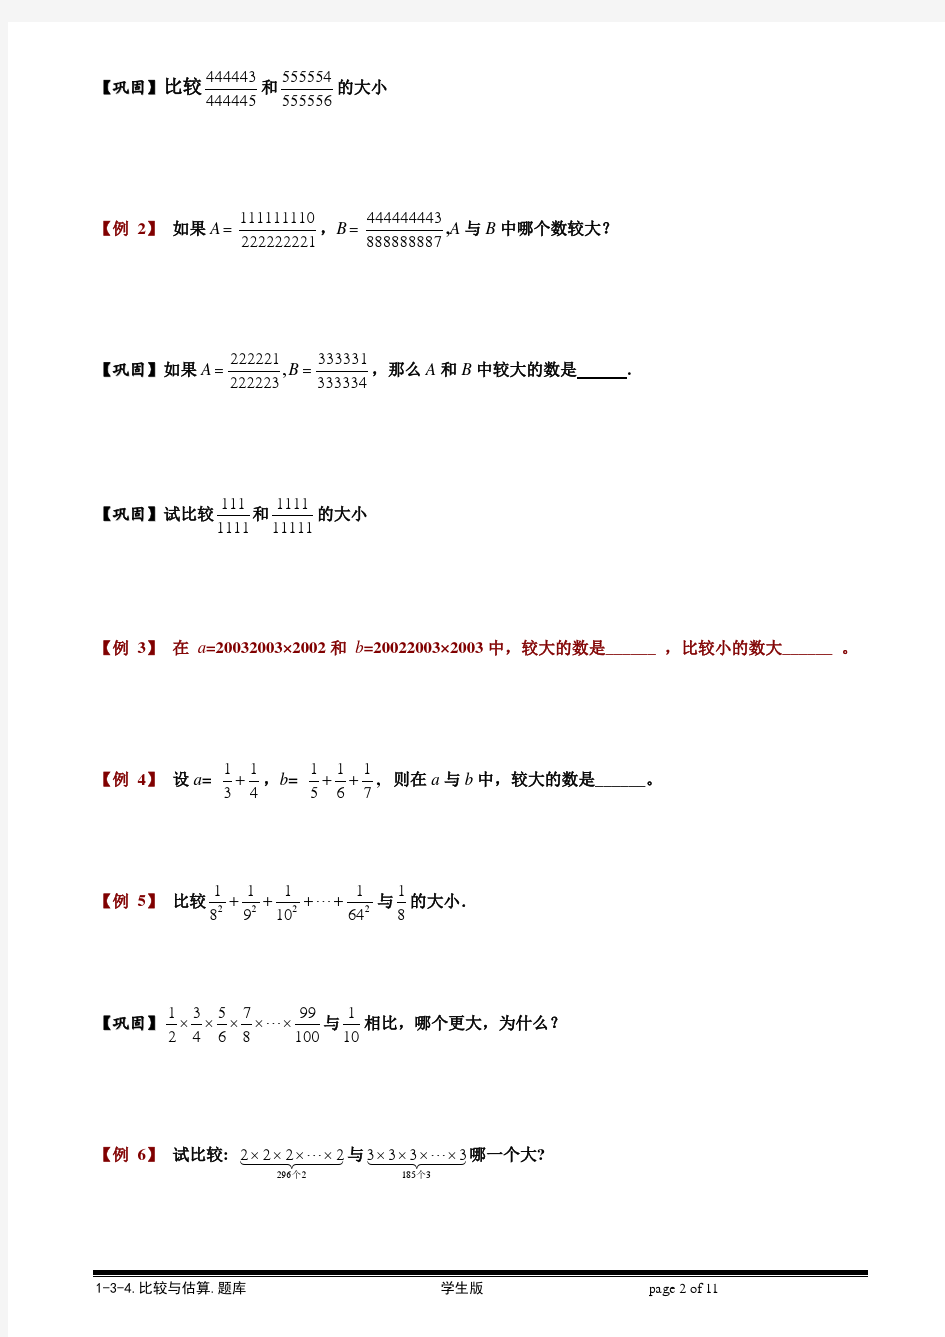 【小学奥数题库系统】1-3-4 比较与估算.学生版